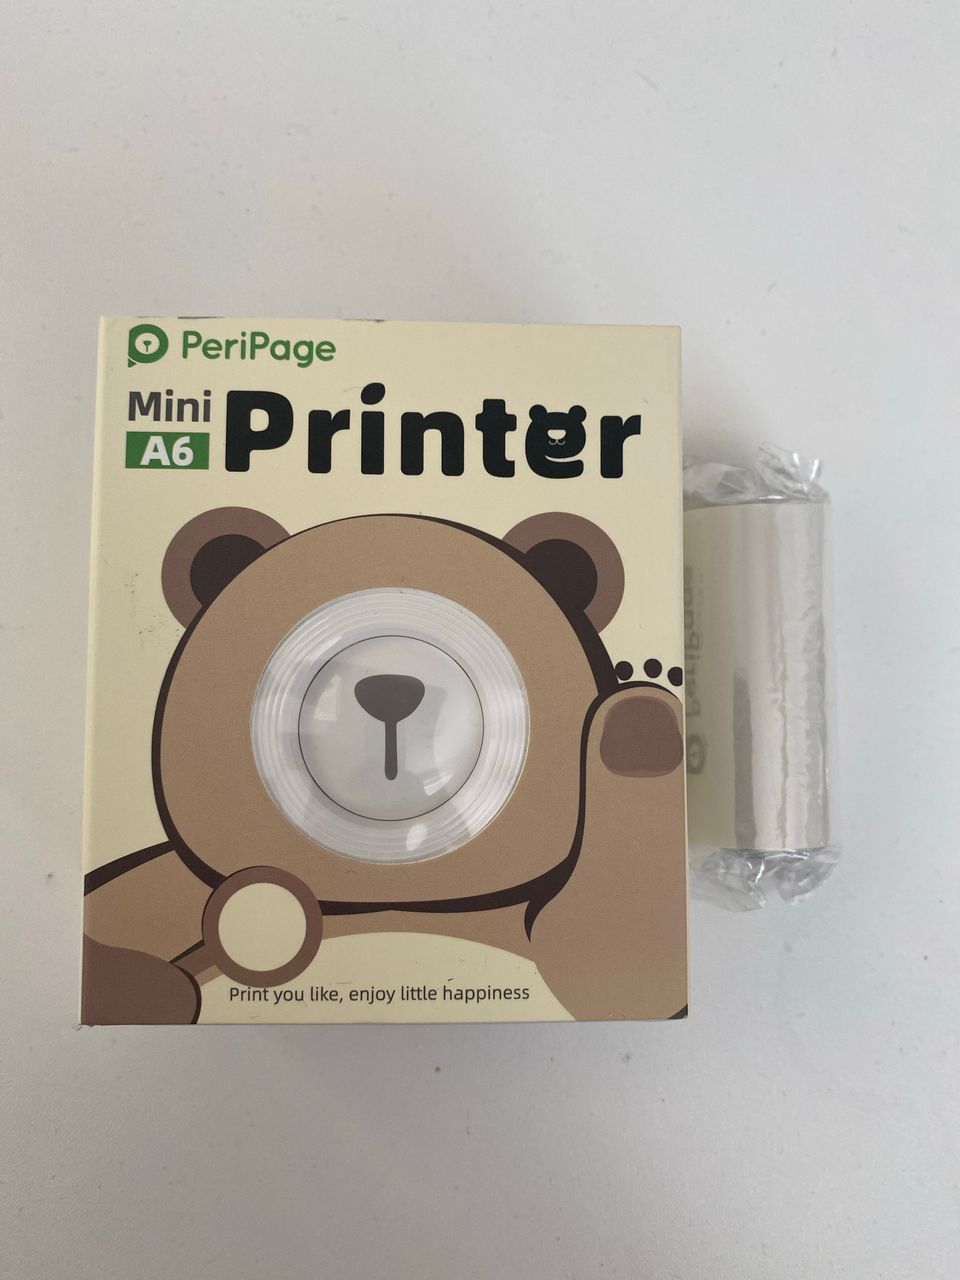 PeriPage Mini Printer